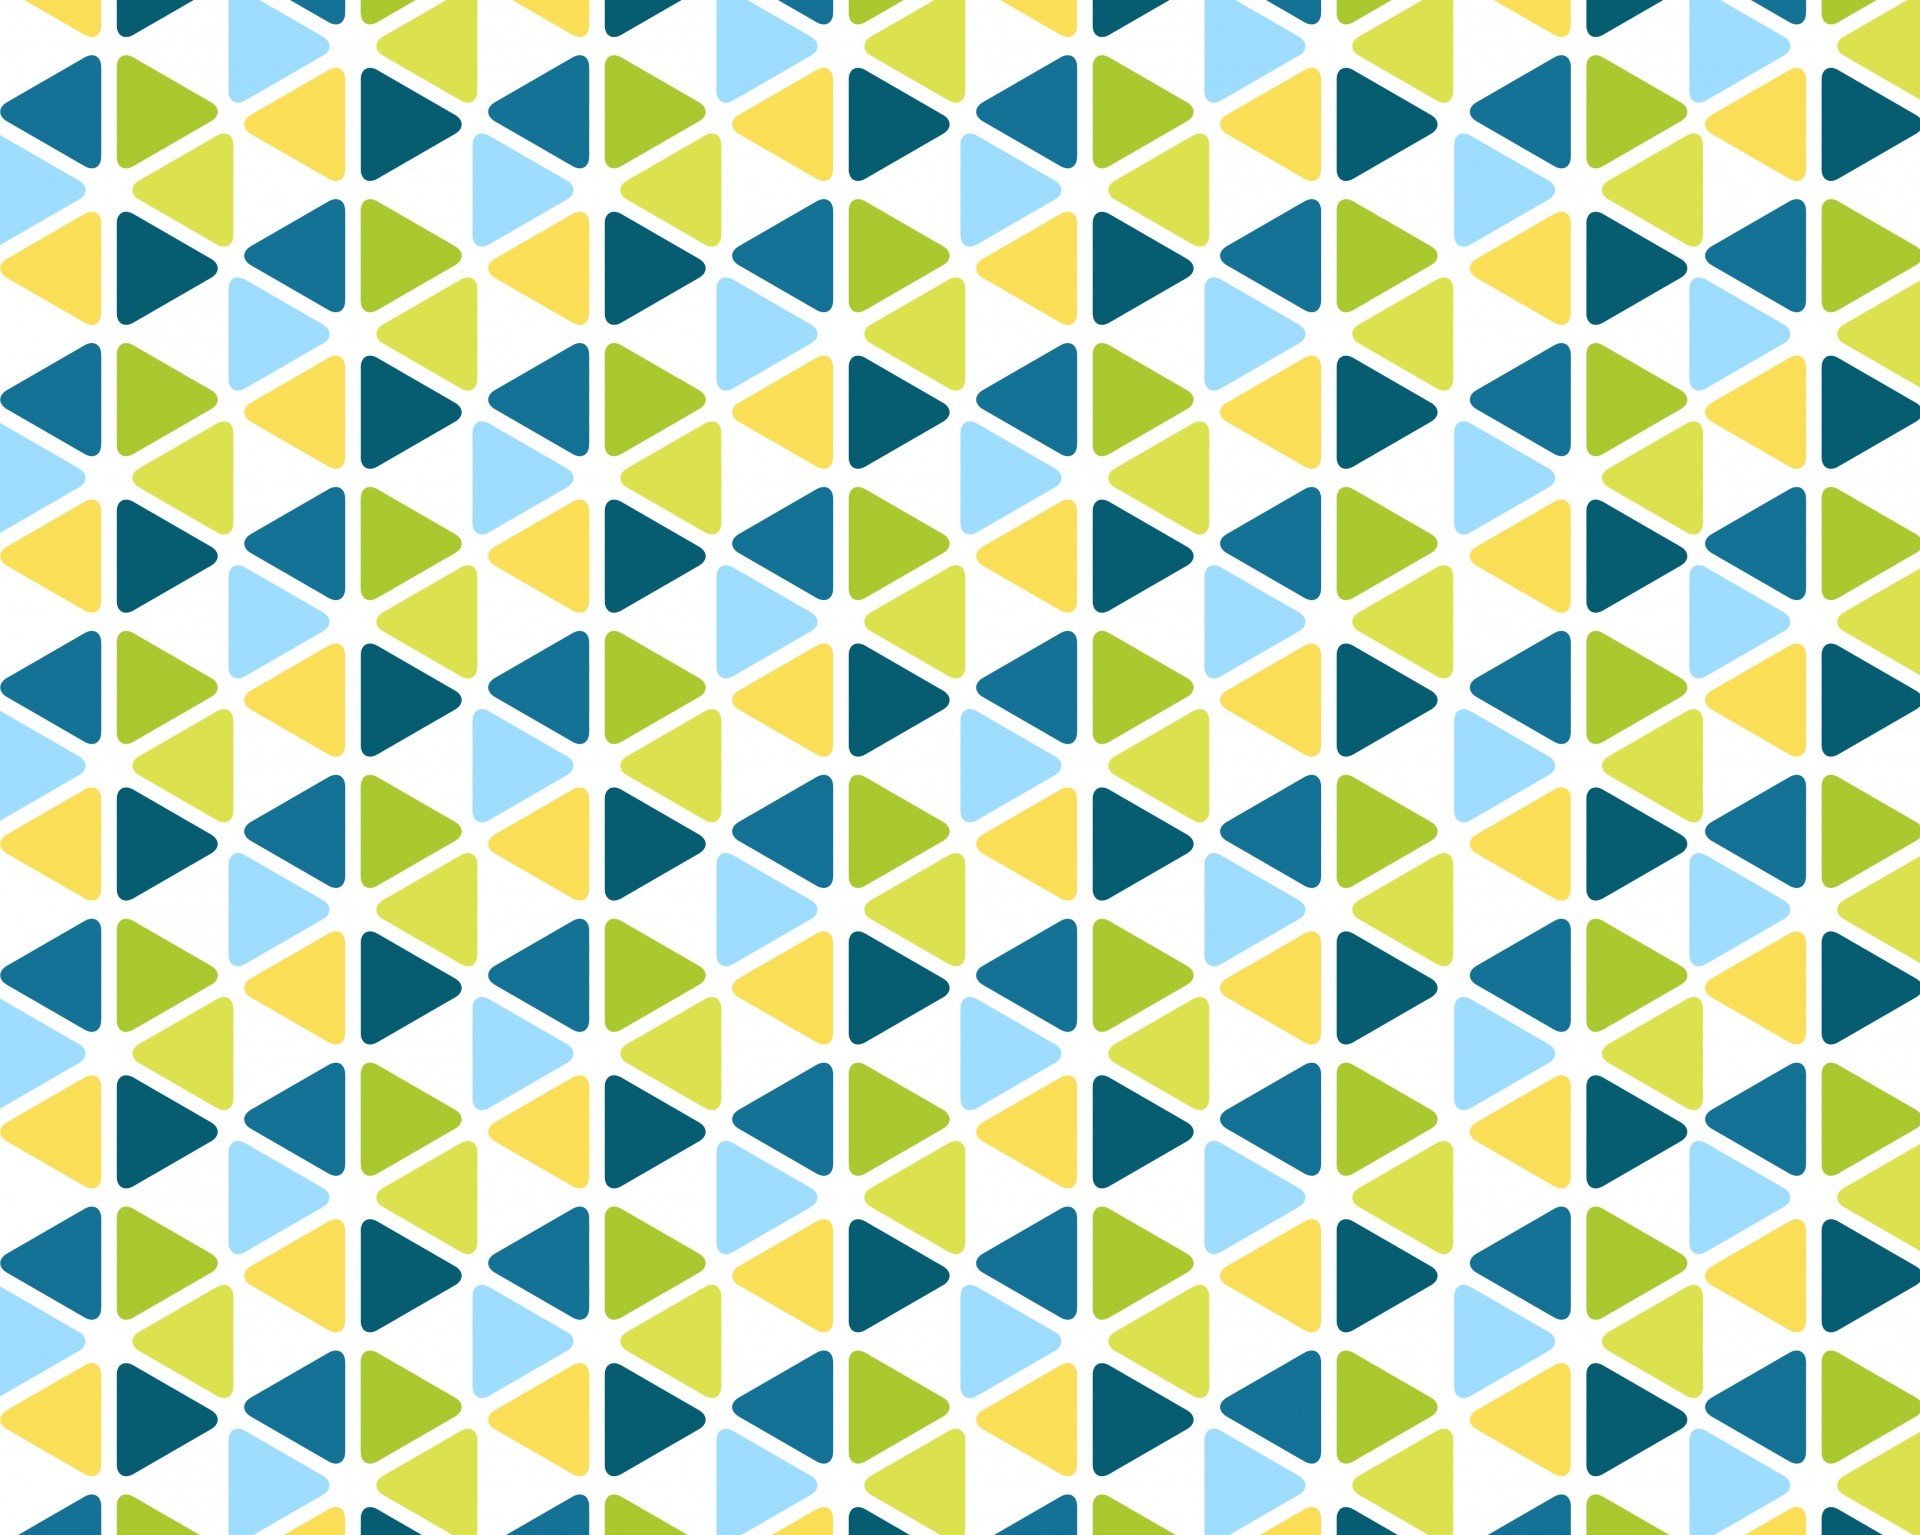 1920x1535 1920 x 1535 px, â½ 641 times. abstract pattern blue green yellow background  wallpaper ...